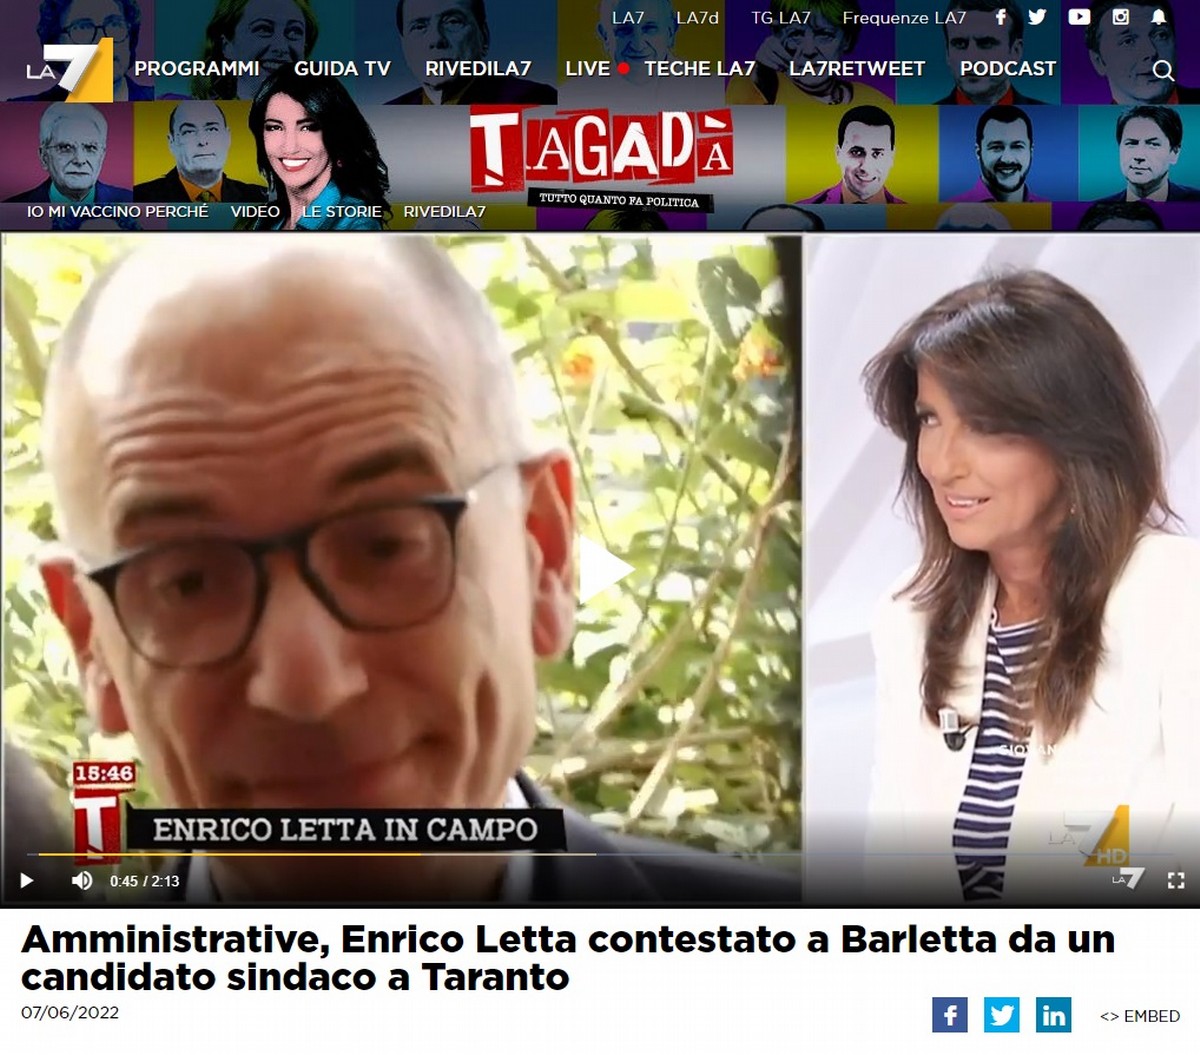 Enrico Letta contestato a Barletta, la diretta finisce su La7